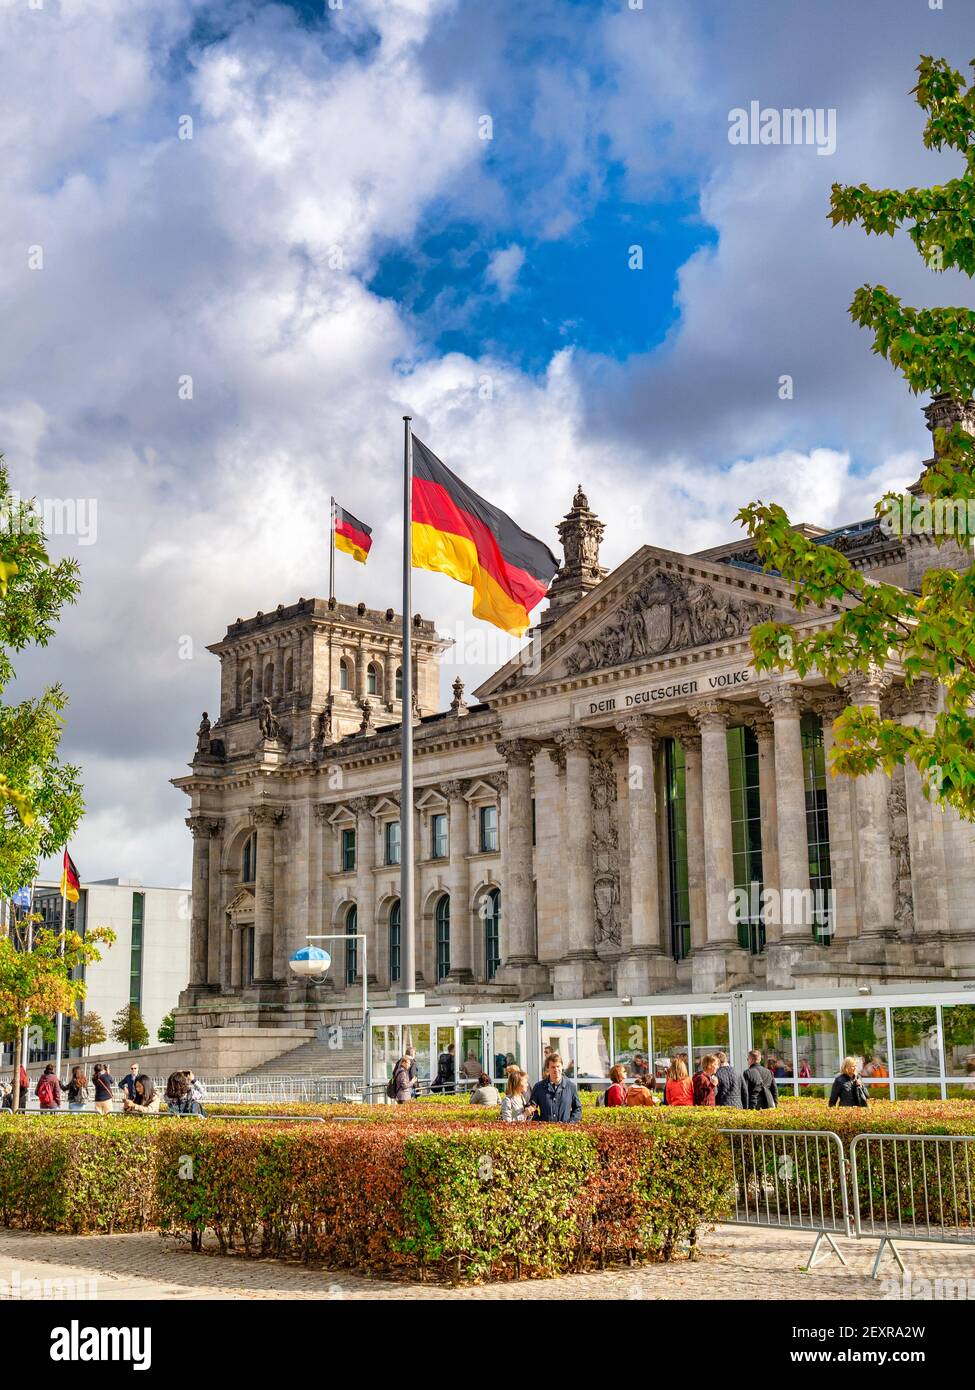 22 settembre 2018: Berlino, Germania - il Reichstag, edificio del Parlamento tedesco, con bandiere che volano, turisti in visita. Foto Stock